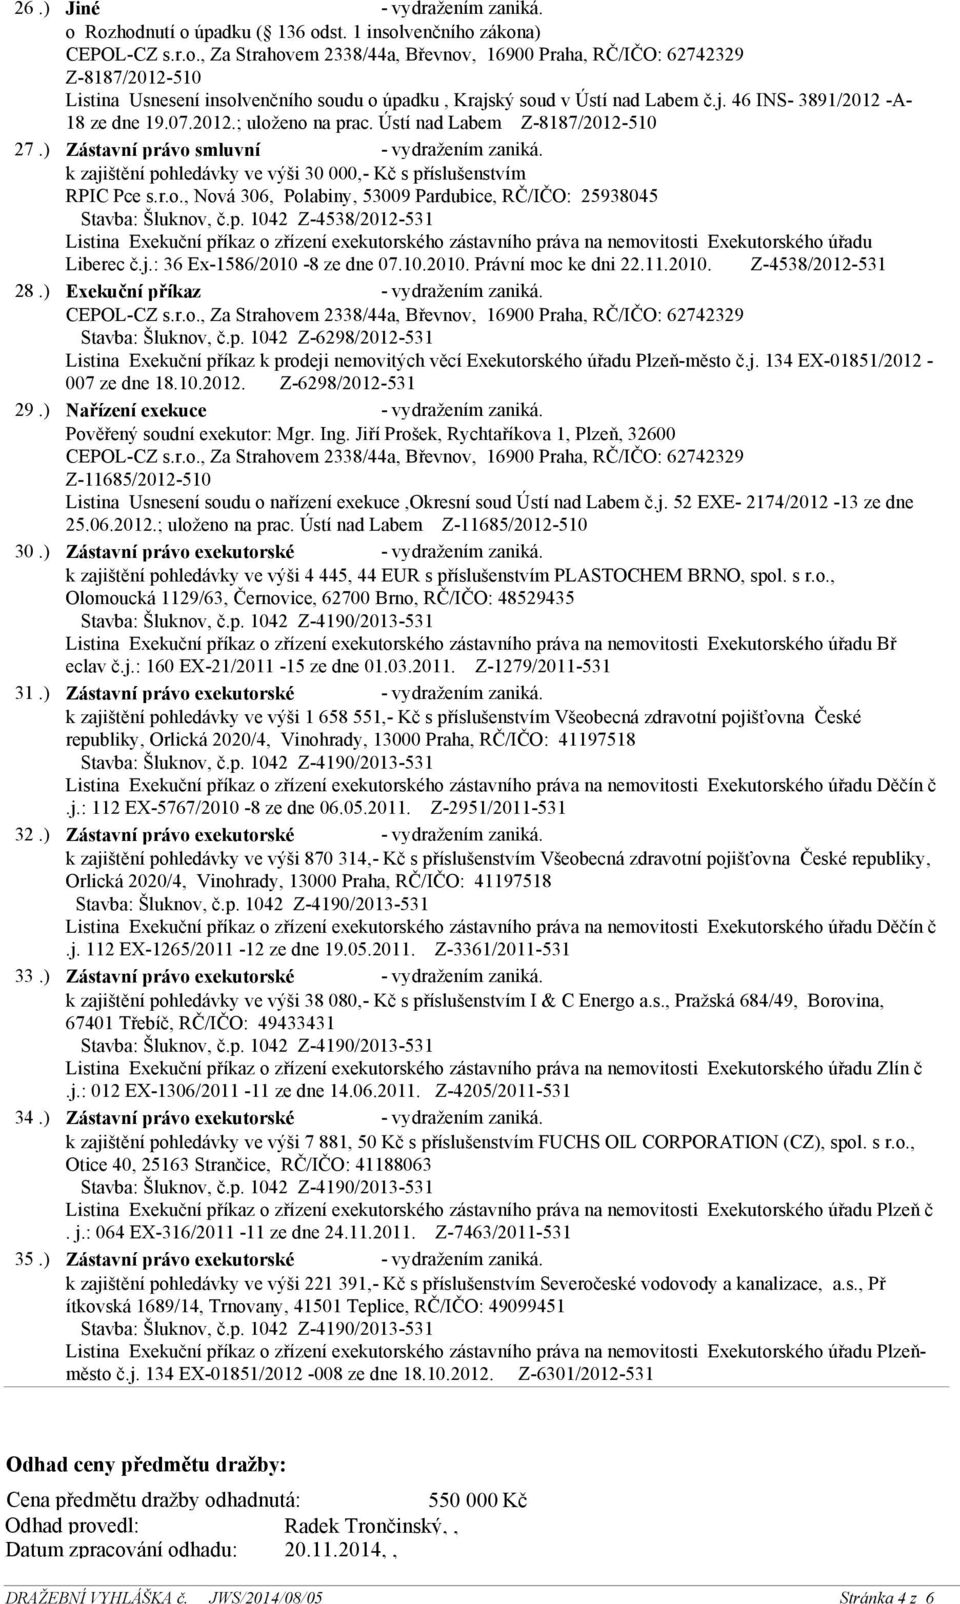 p. 1042 Z-4538/2012-531 Listina Exekuční příkaz o zřízení exekutorského zástavního práva na nemovitosti Exekutorského úřadu Liberec č.j.: 36 Ex-1586/2010-8 ze dne 07.10.2010. Právní moc ke dni 22.11.